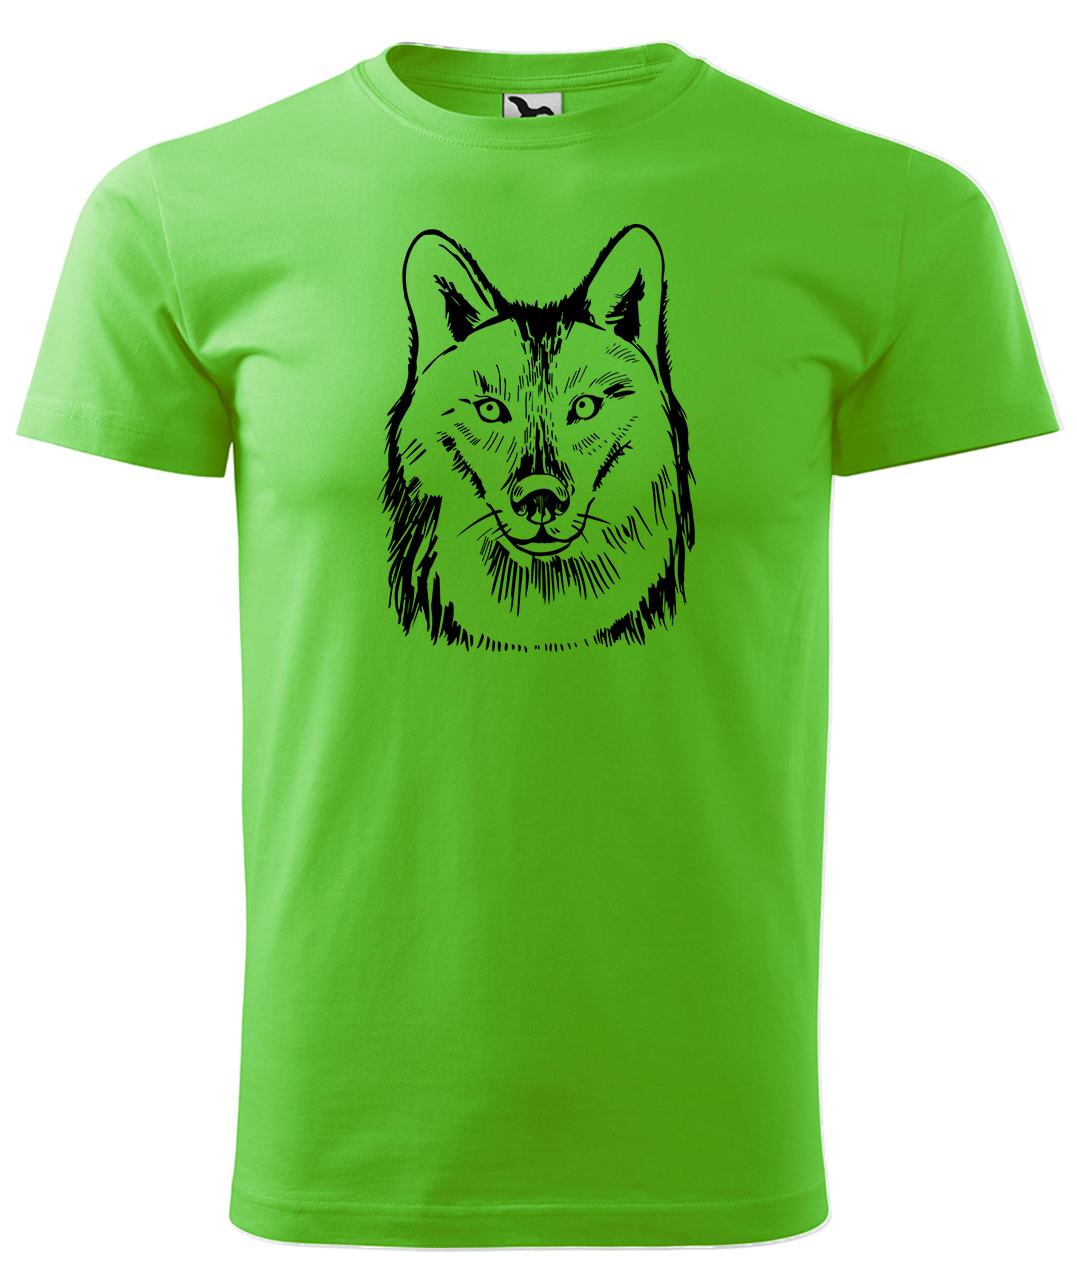 Dětské tričko s vlkem - Kresba vlka Velikost: 8 let / 134 cm, Barva: Apple Green (92), Délka rukávu: Dlouhý rukáv